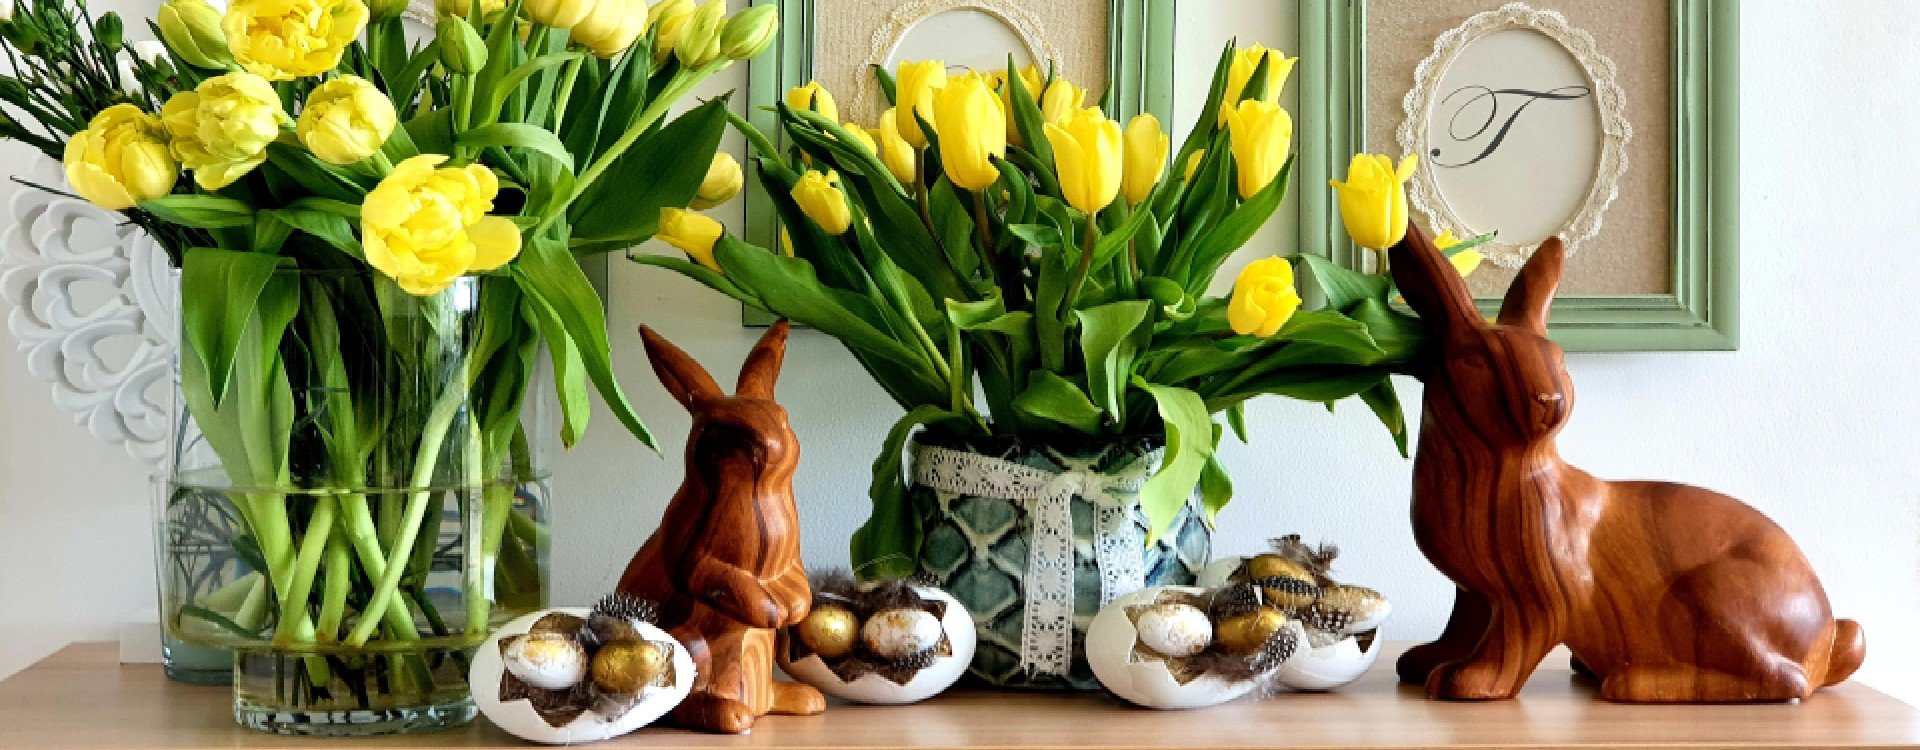 Wazon Wielkanocny z królikami